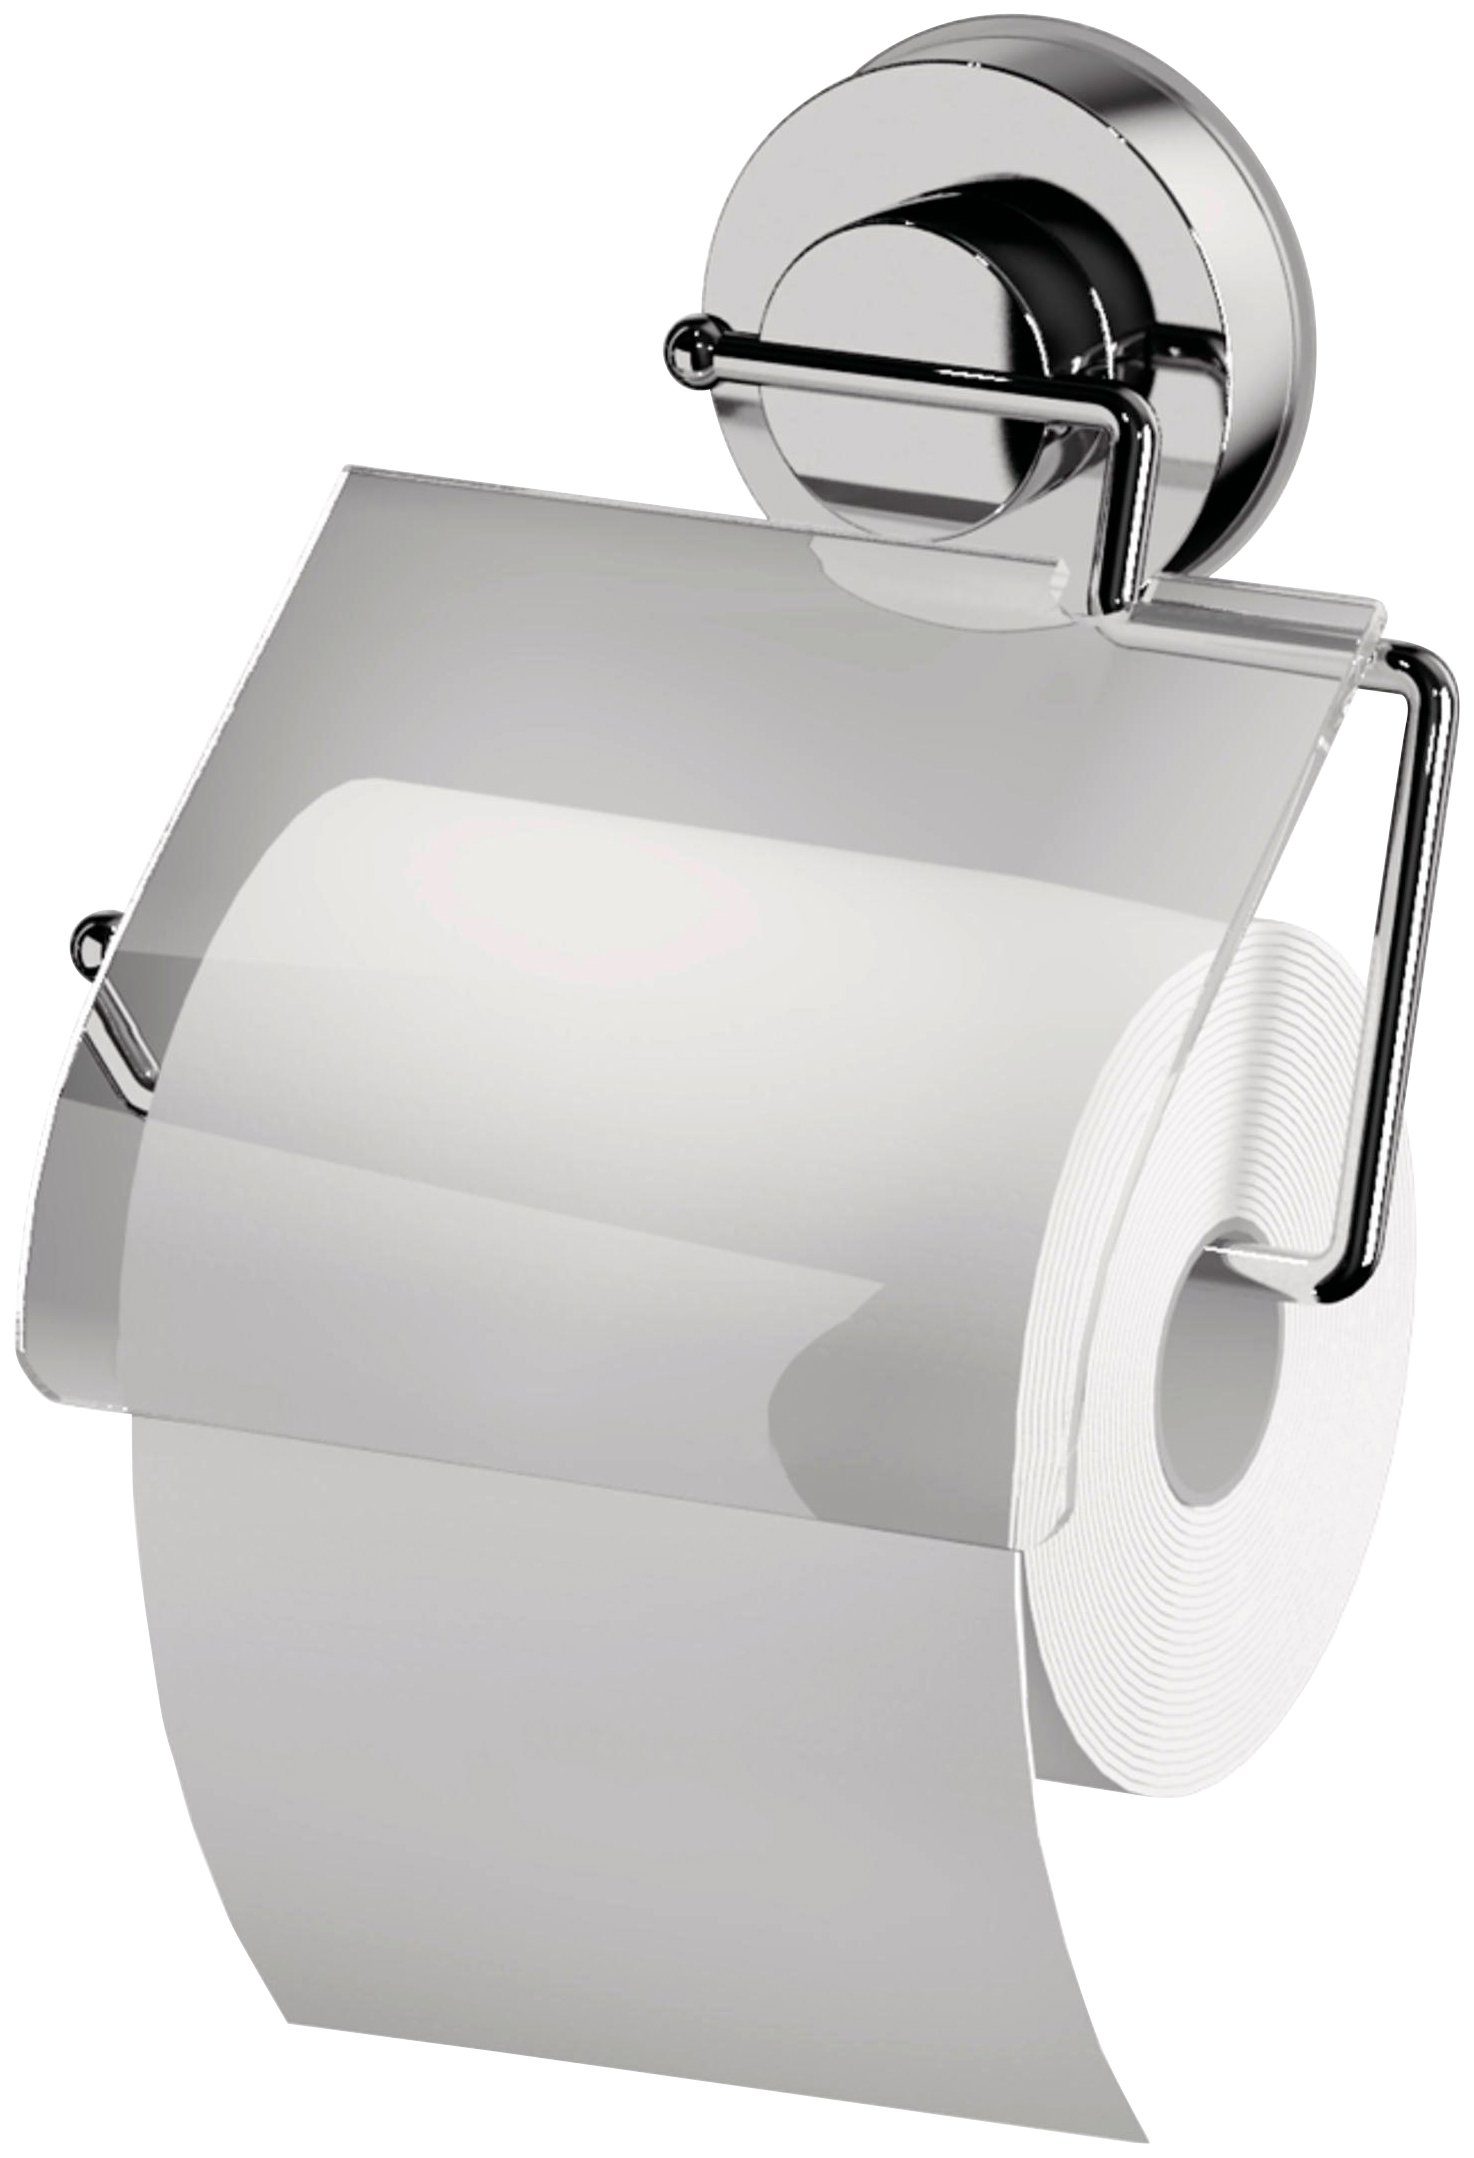 Ridder Toilettenpapierhalter, mit Saugvorrichtung, Bei auf rückstandslos entfernbar Verwendung nicht Tapete